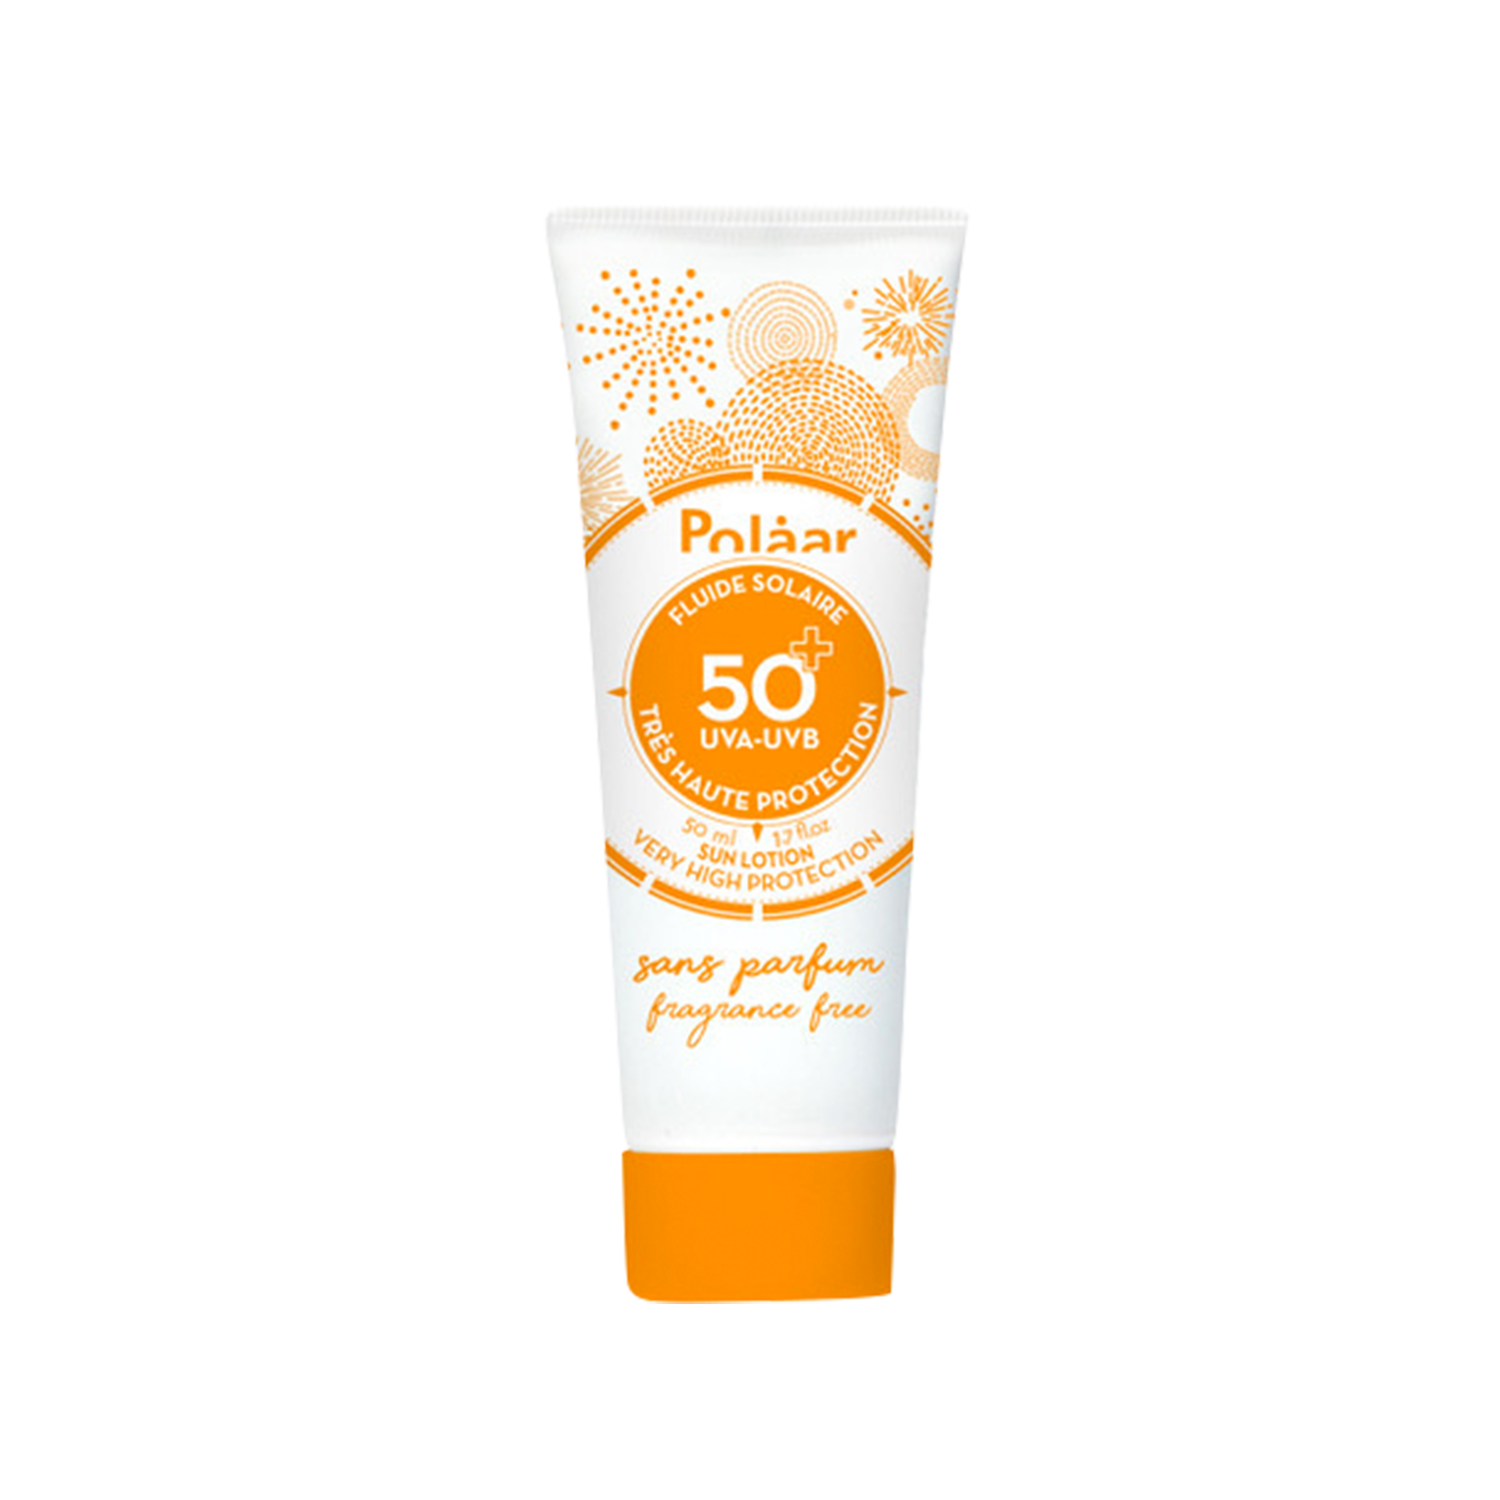 Polaar Sun Lotion SPF 50+ Very High Protection fragrance free  1